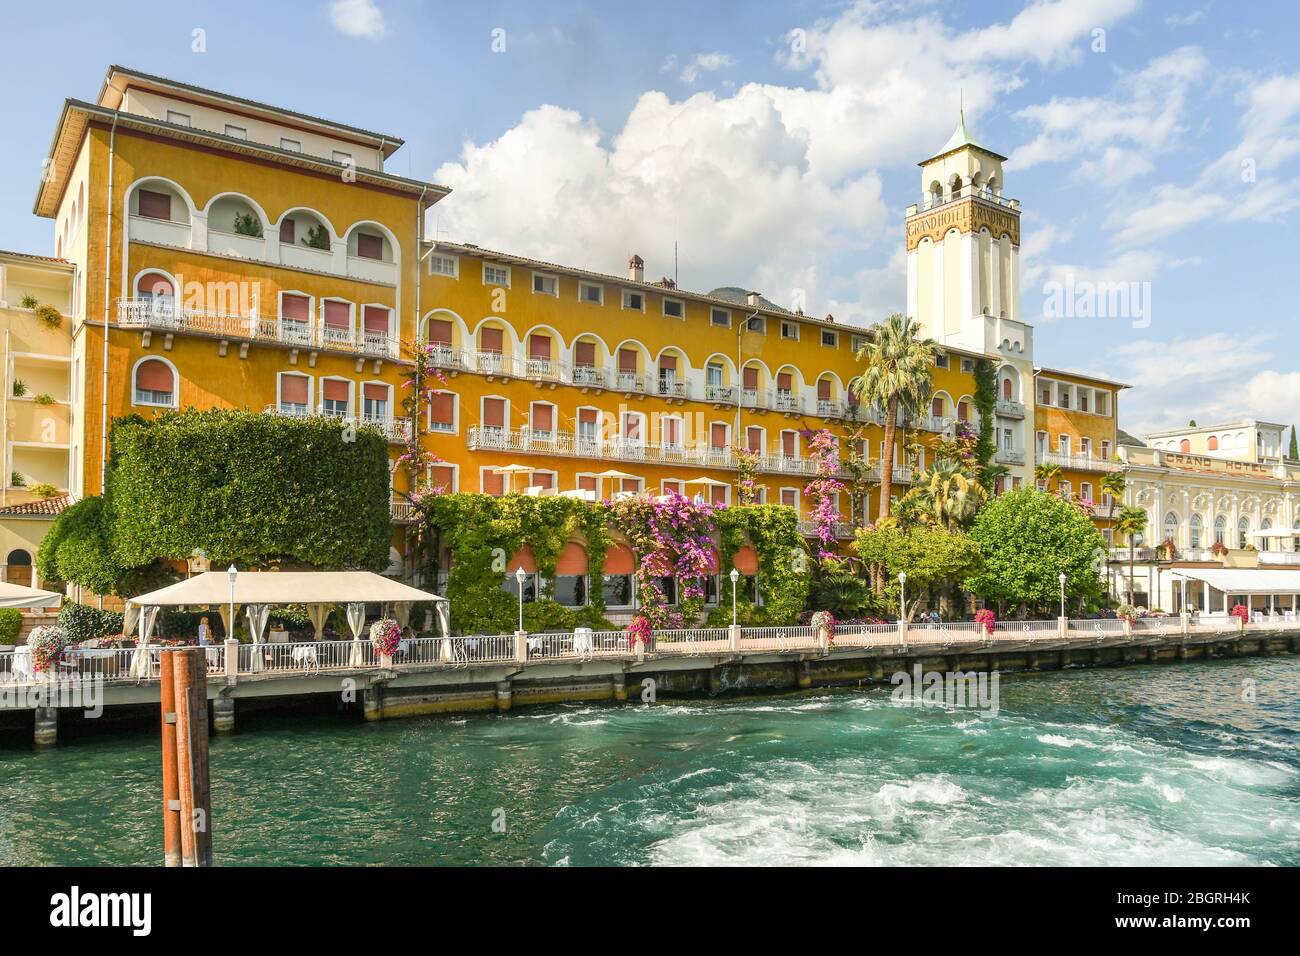 GARDONE RIVIERA, ITALIE - Septembre 2018 : Le Grand Hotel Gardone à Gardone Riviera, sur le lac de Garde. Banque D'Images